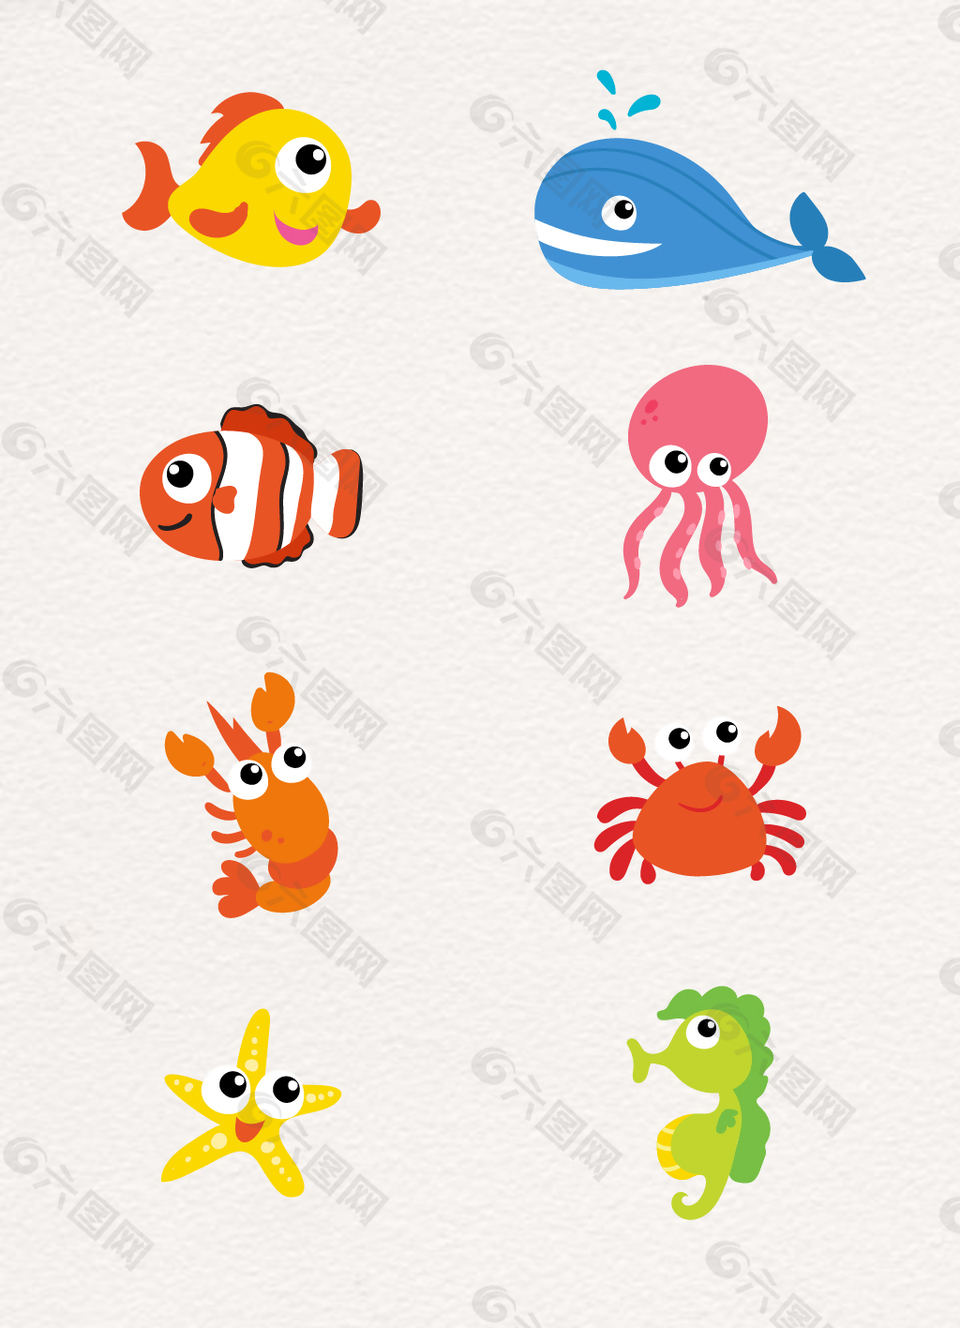 大眼萌趣缤纷彩色海洋生物卡通设计